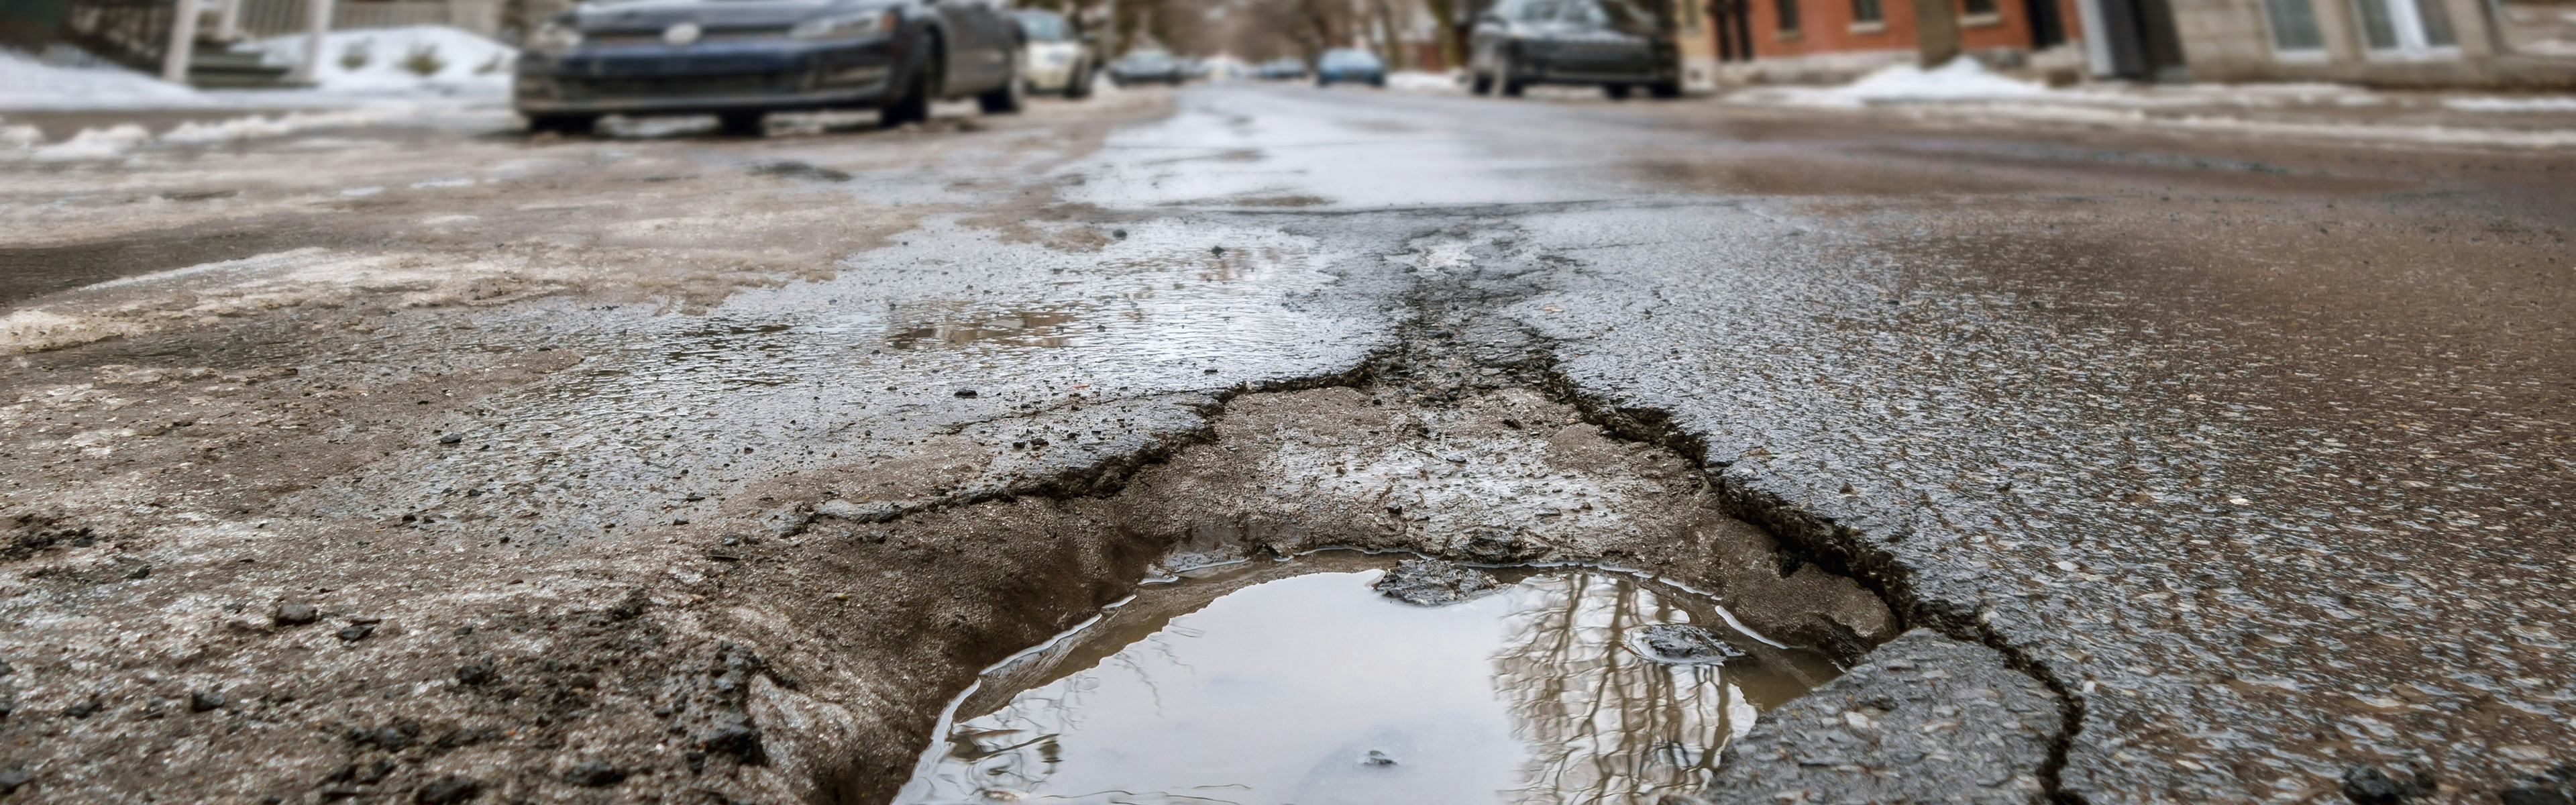 CAA Worst Roads - The cost of poor roads